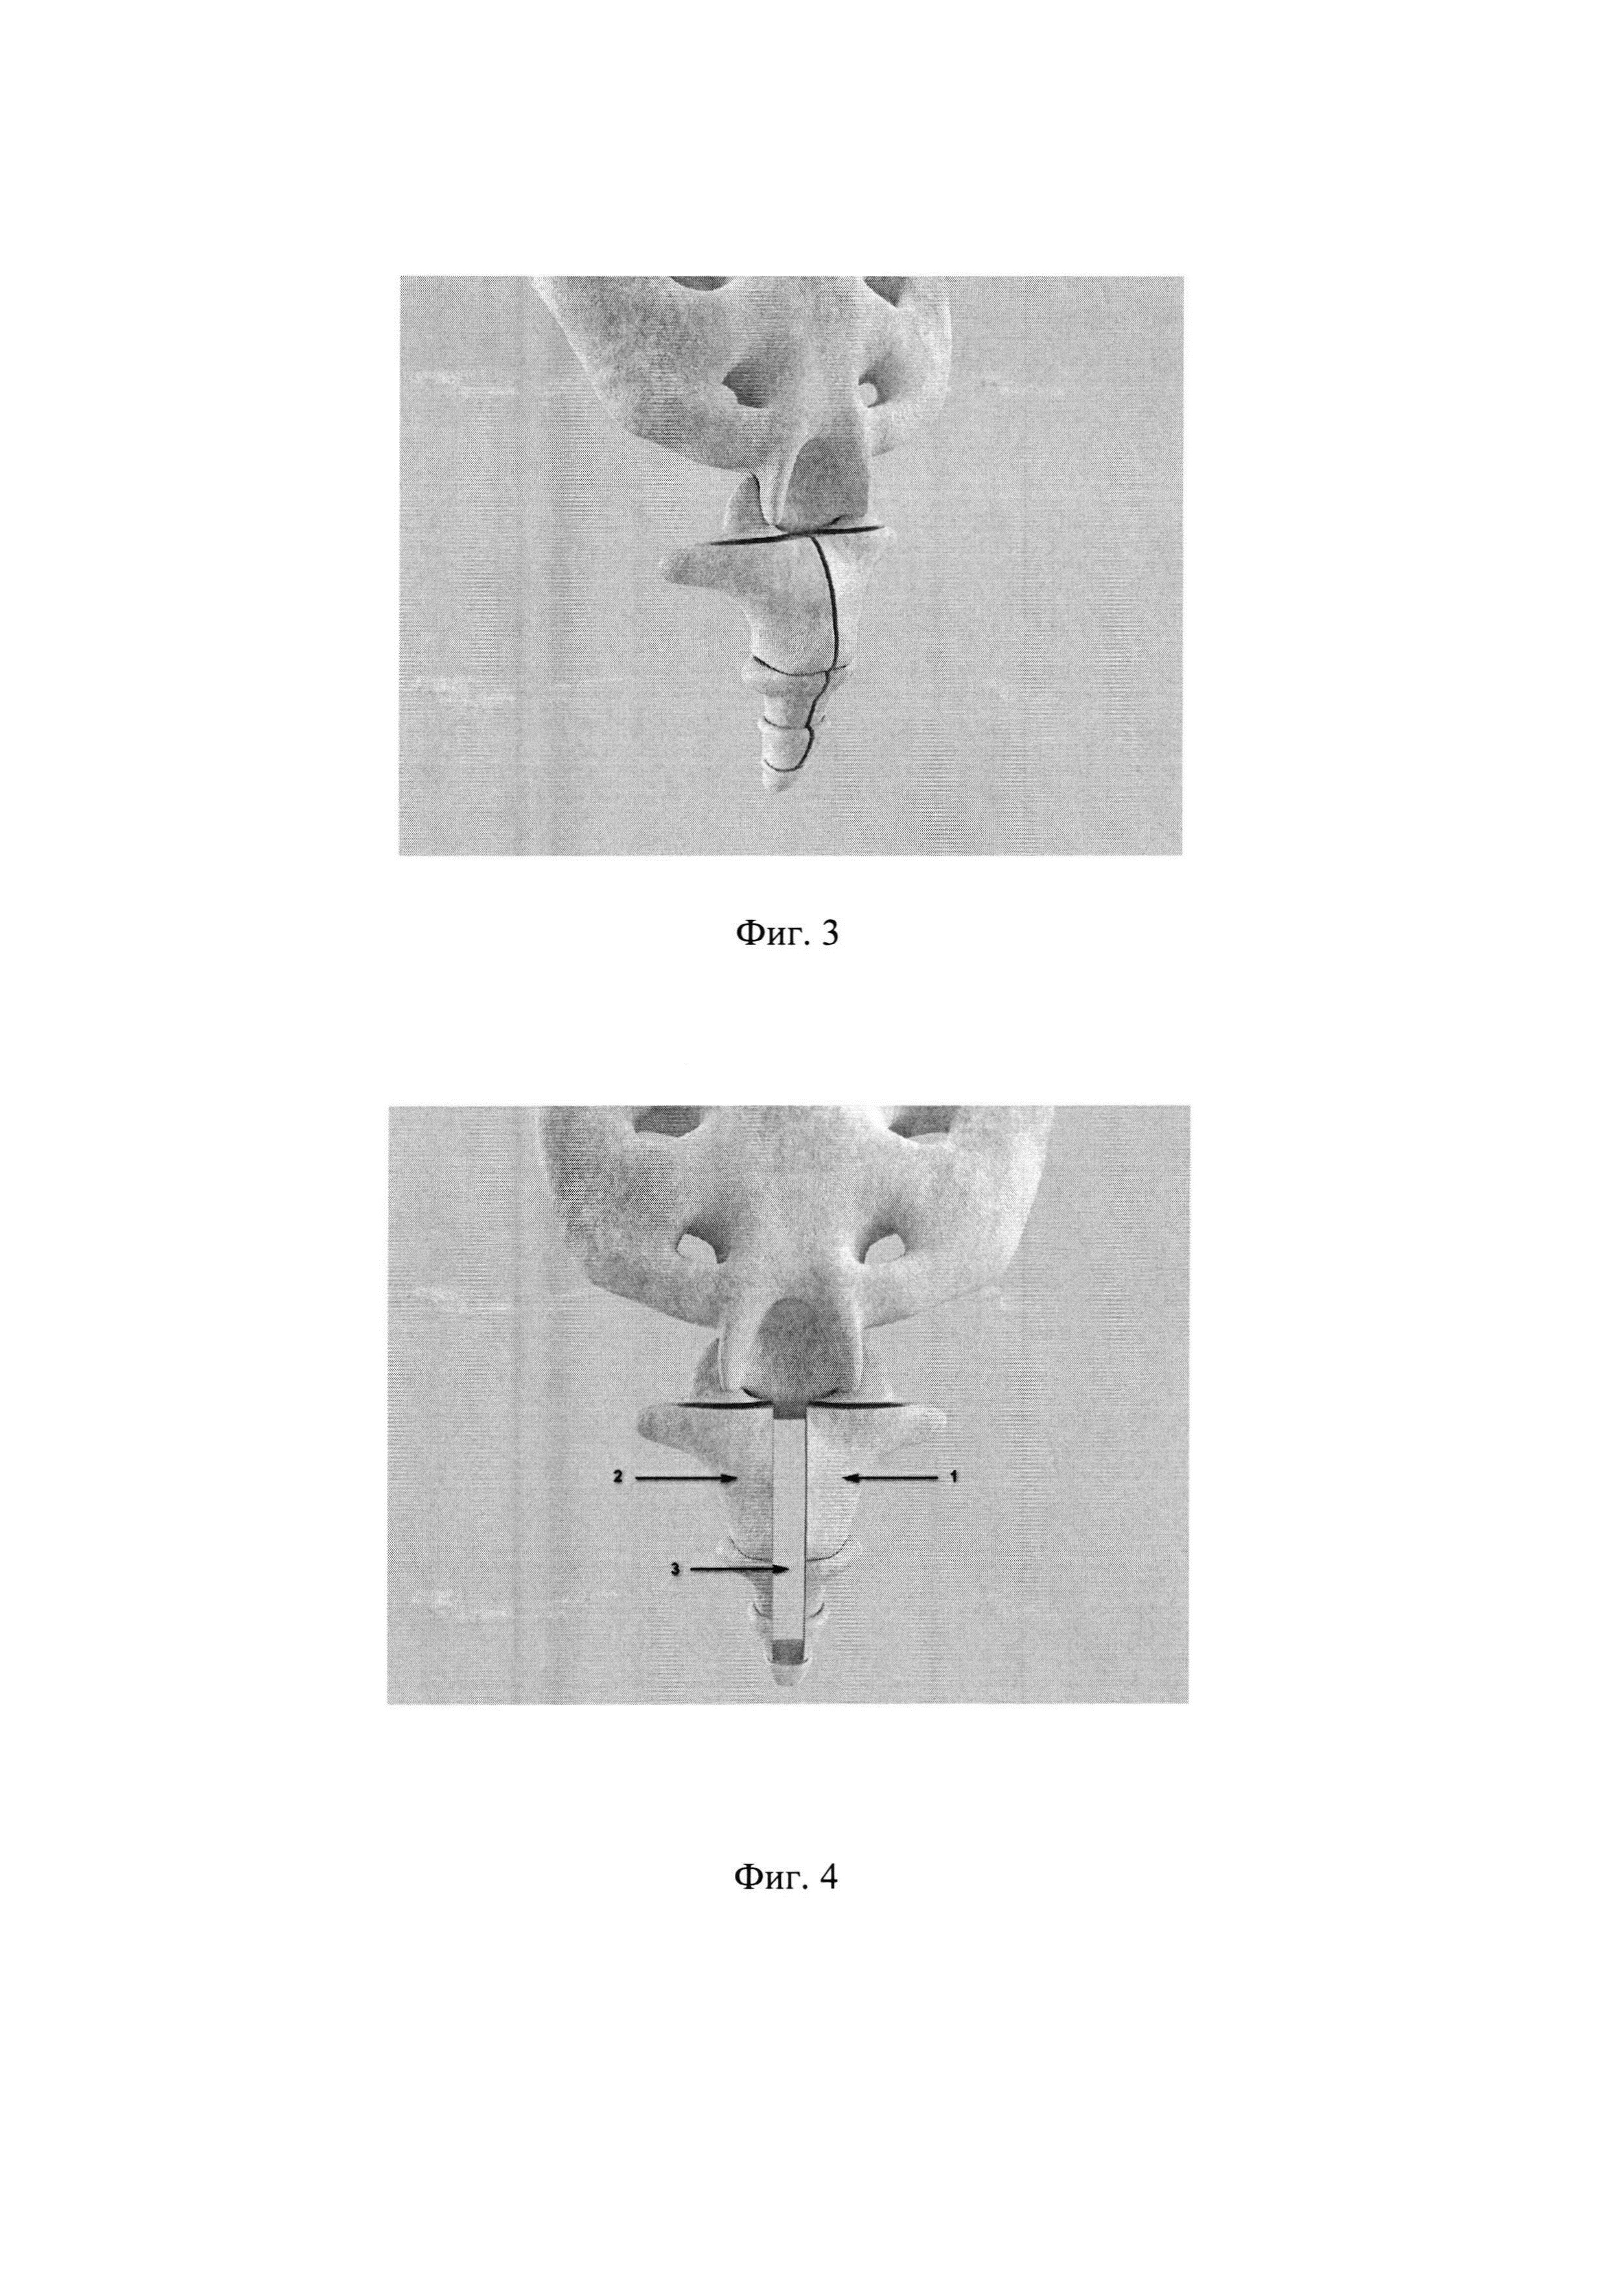 Способ оперативного лечения посттравматической кокцигодинии с использованием аллопланта седалищного нерва и перфорированной металлической пластины для замещения костного дефекта